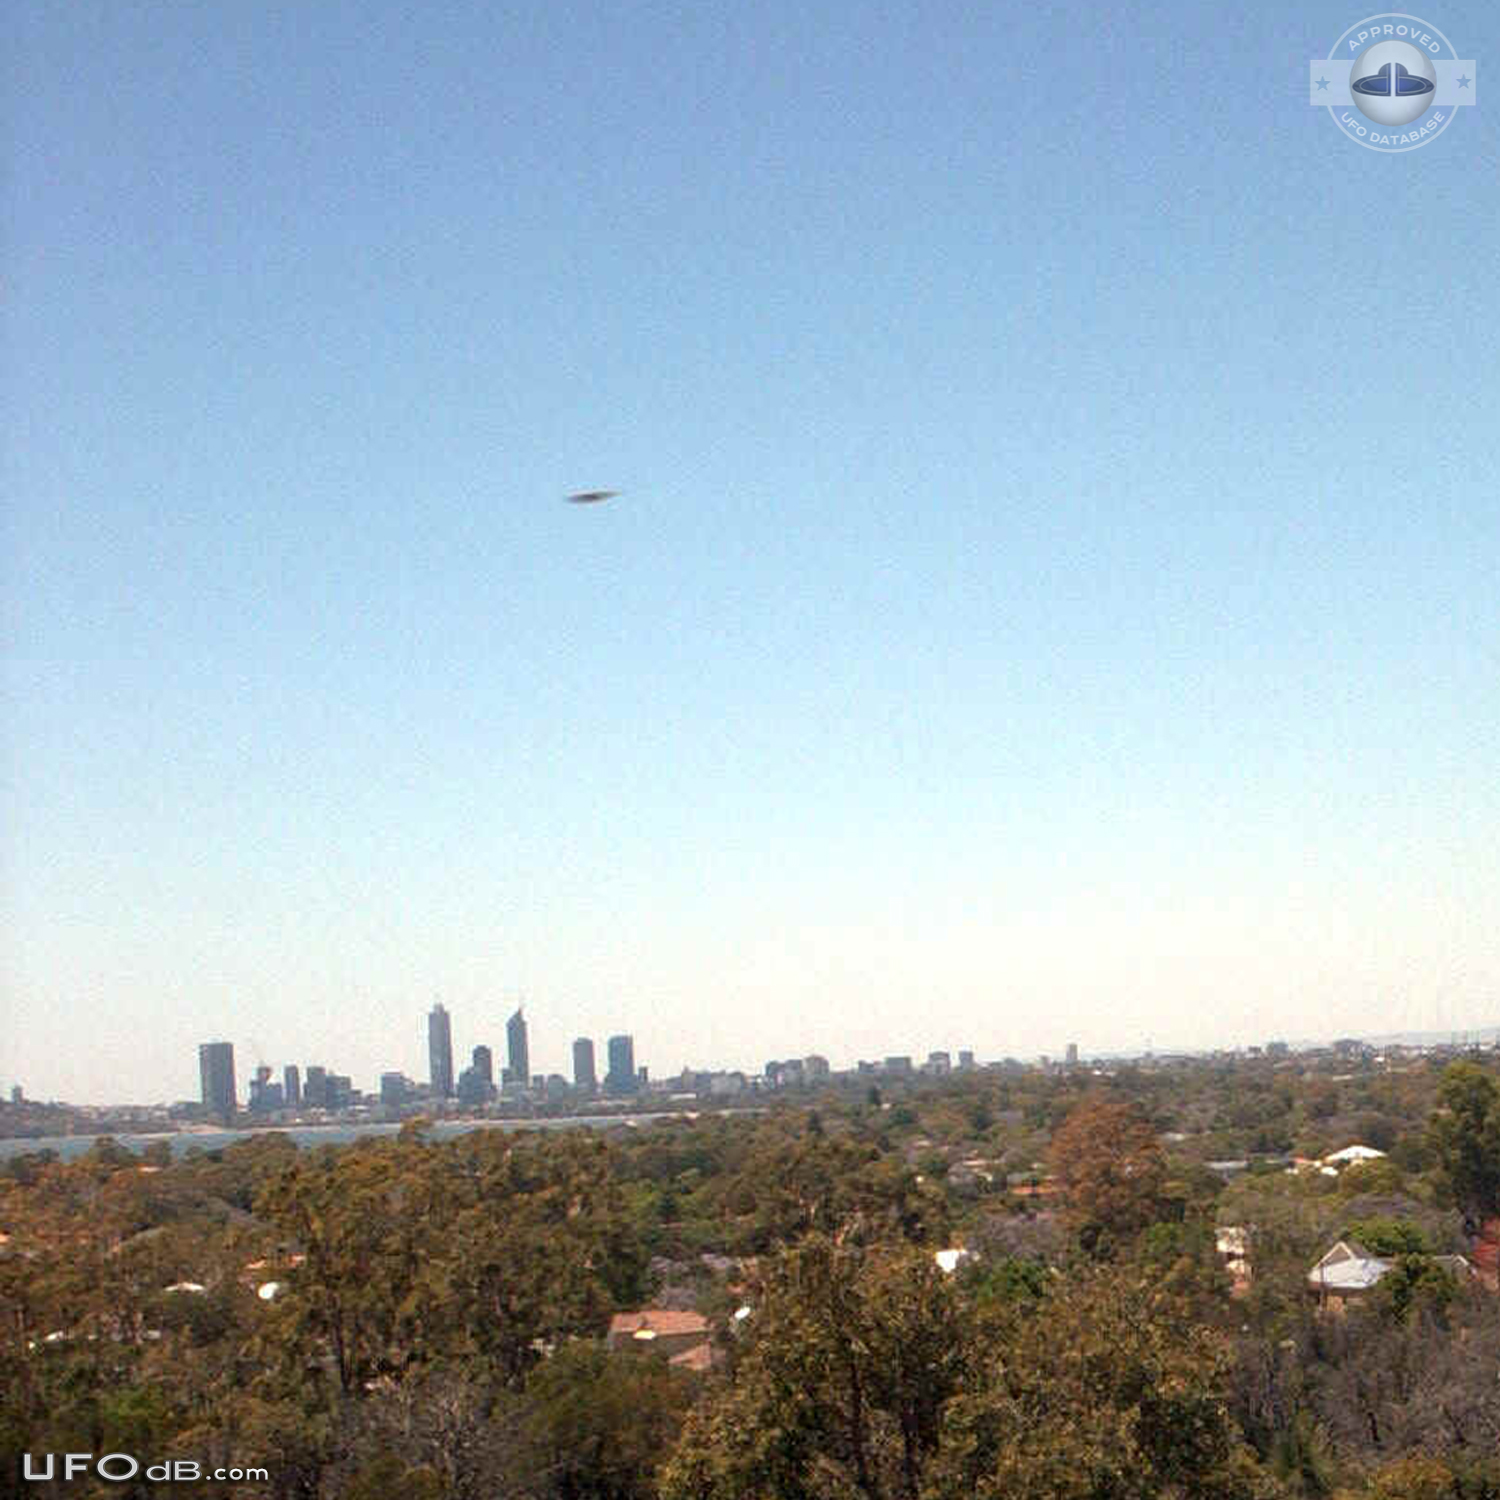 Panorama picture capture a UFO over Wireless Hill park Perth Australia UFO Picture #556-2